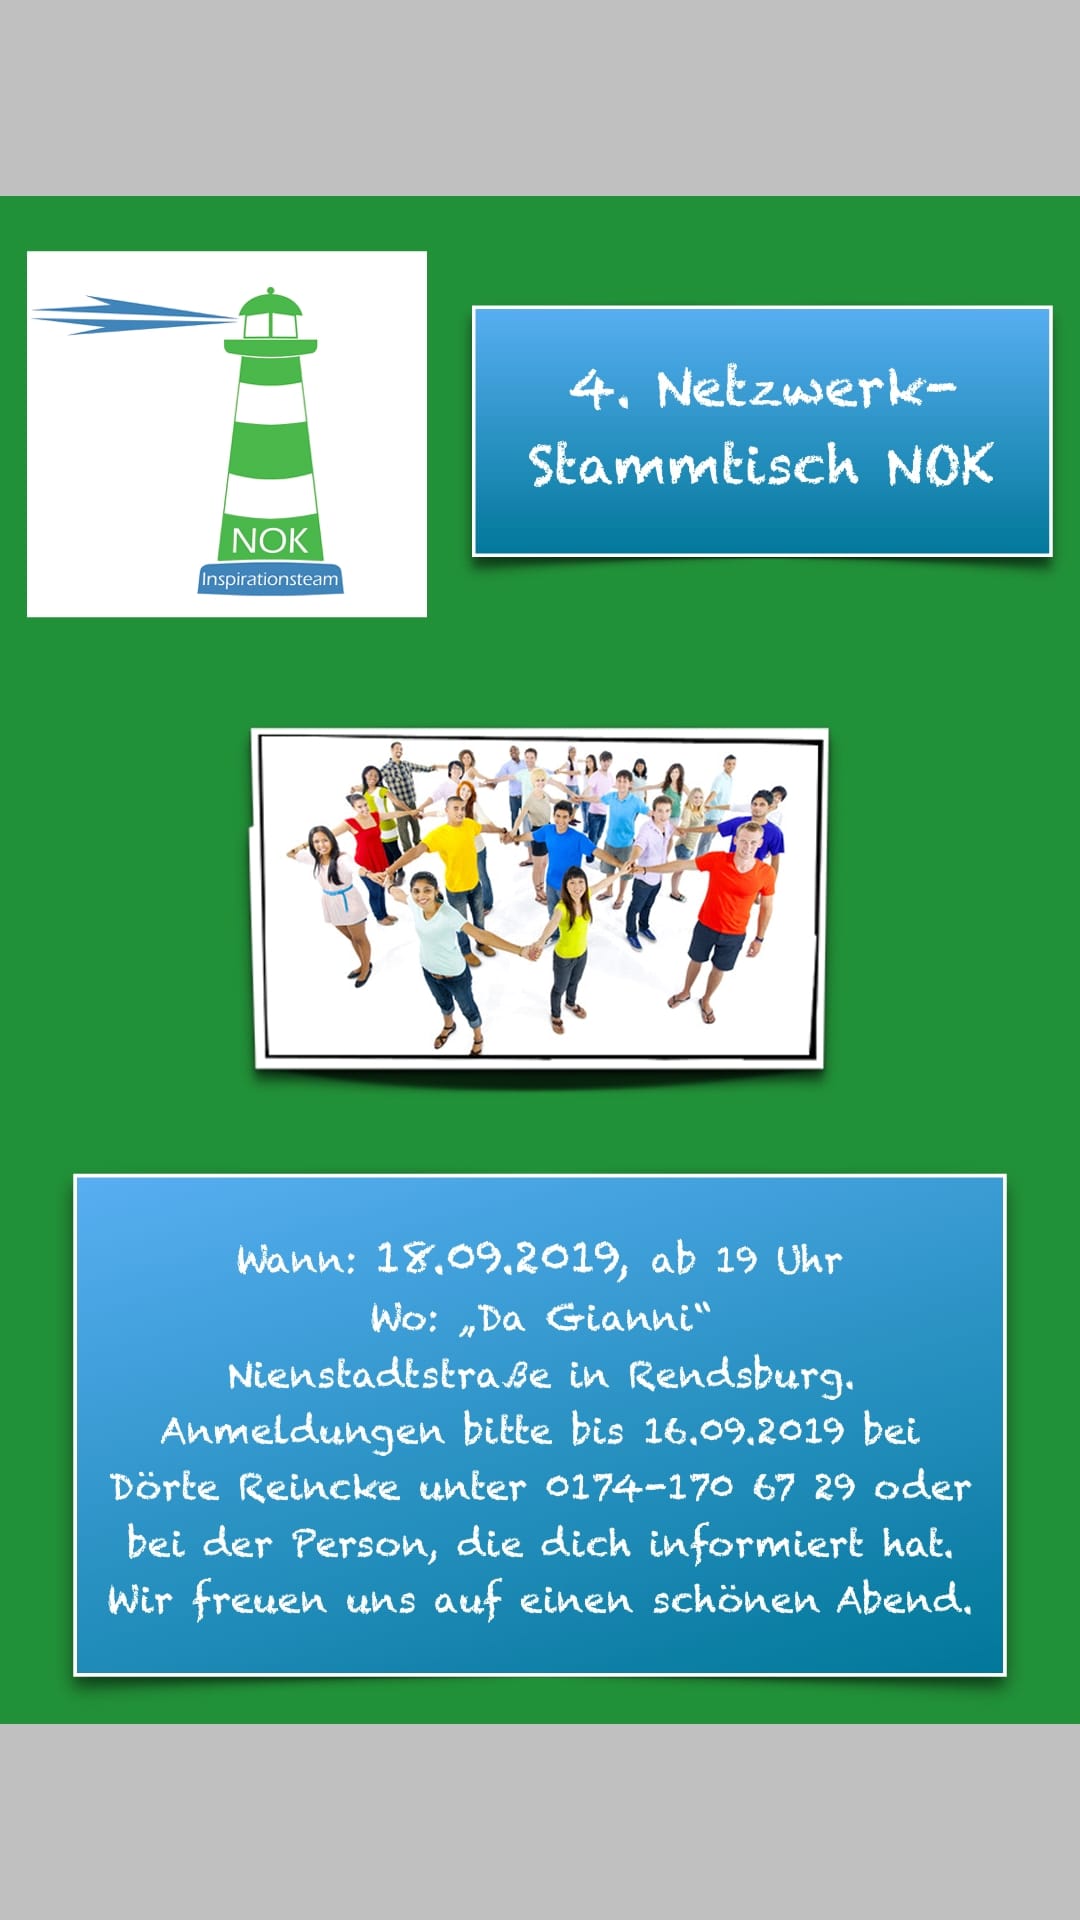 You are currently viewing Netzwerk Stammtisch NOK